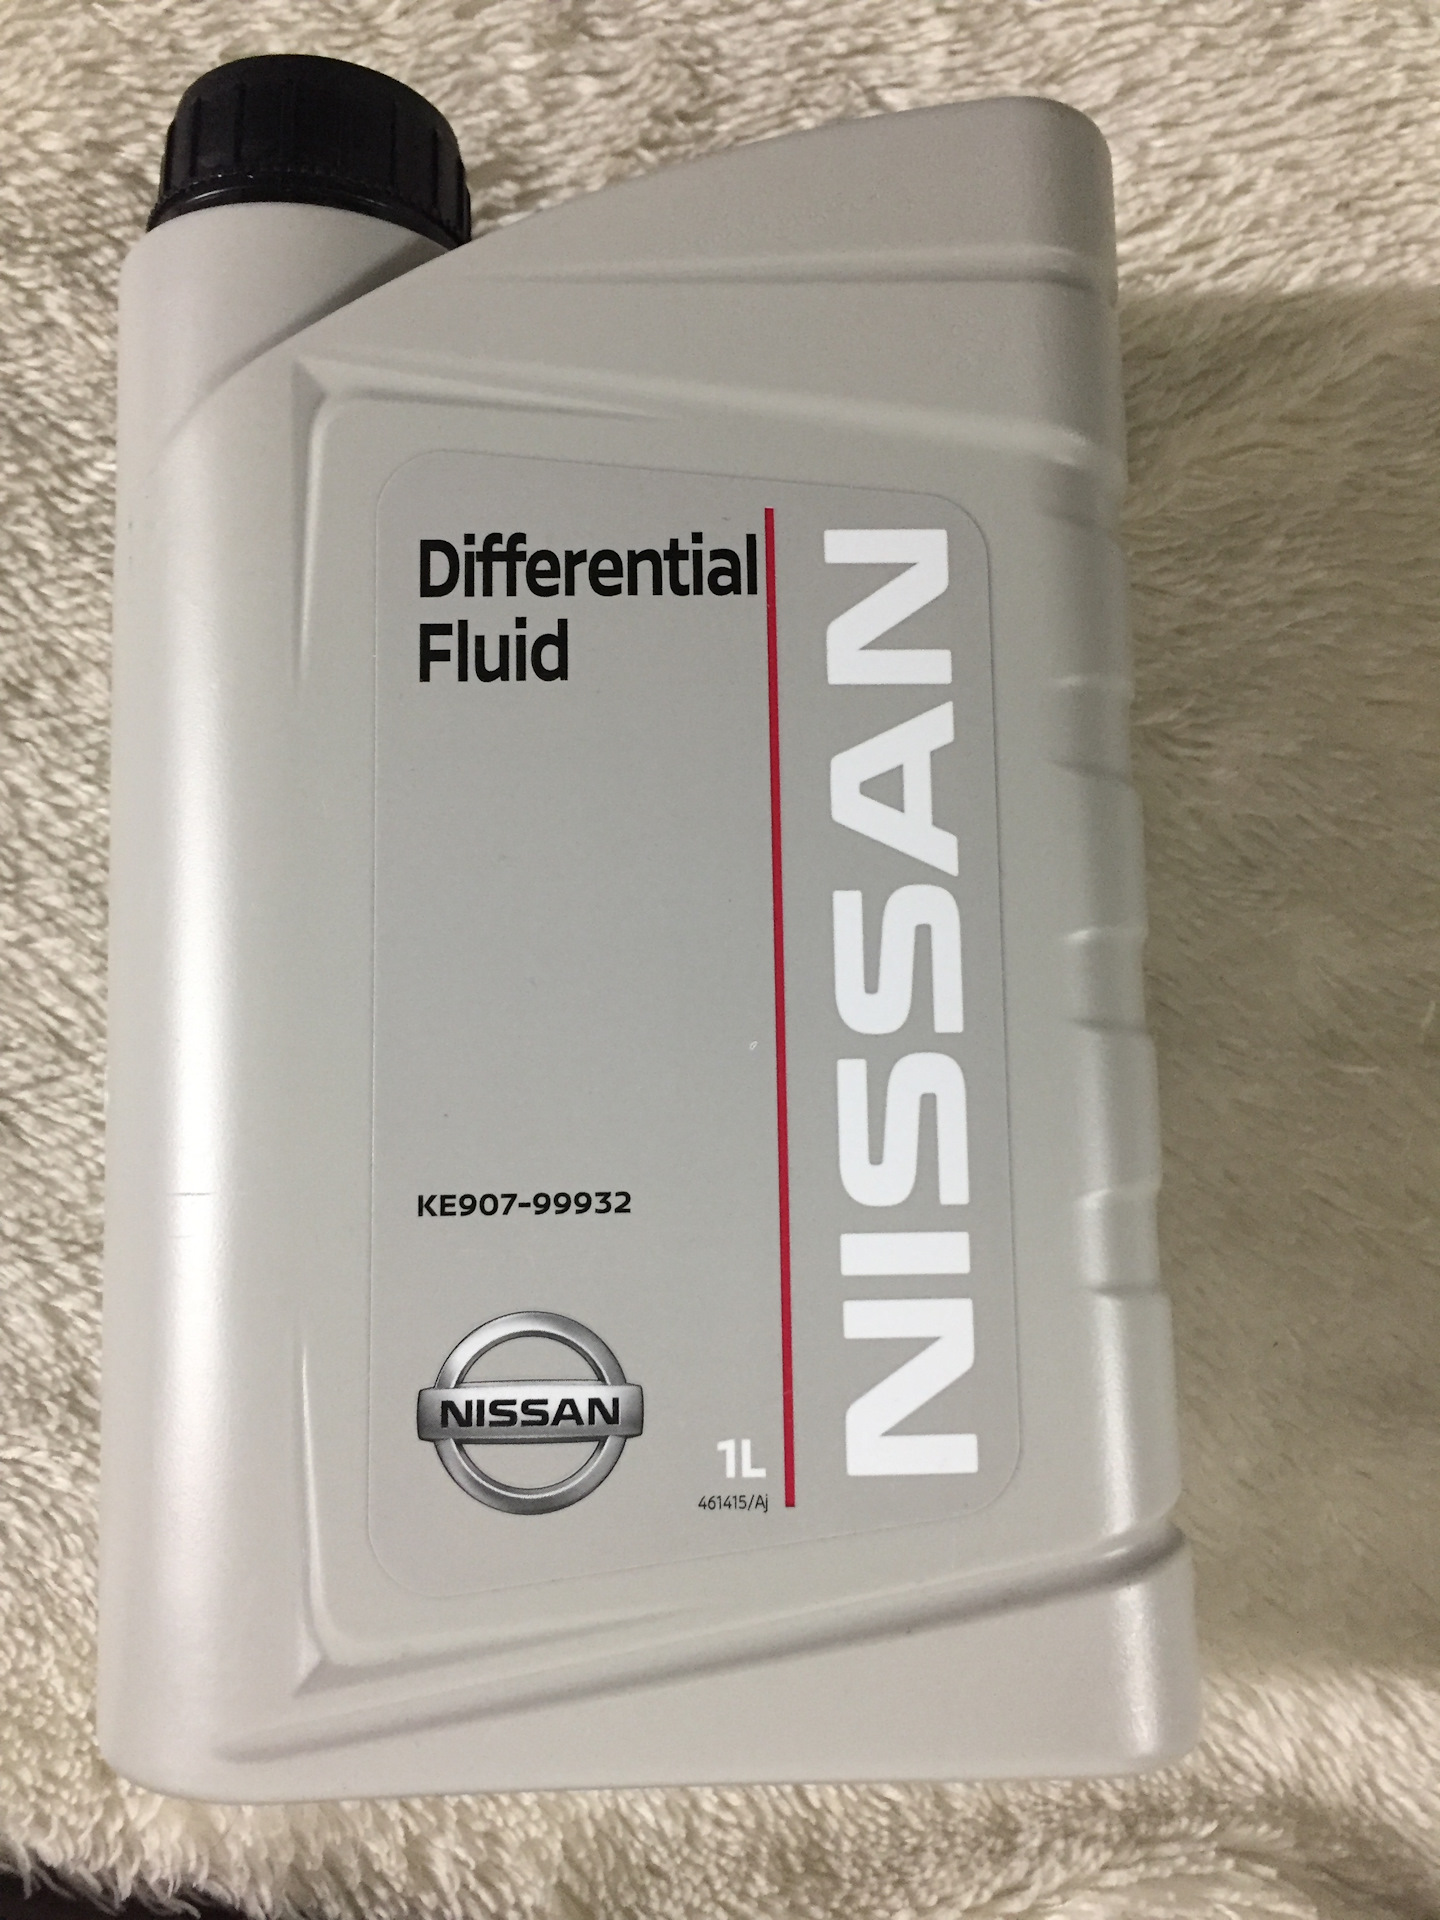 Атф ниссан. ATF Nissan matic j 5л. Nissan ATF matic j Fluid. Nissan Differential Fluid(ke907-99932). Ke907-99932 gl-5 80w90.